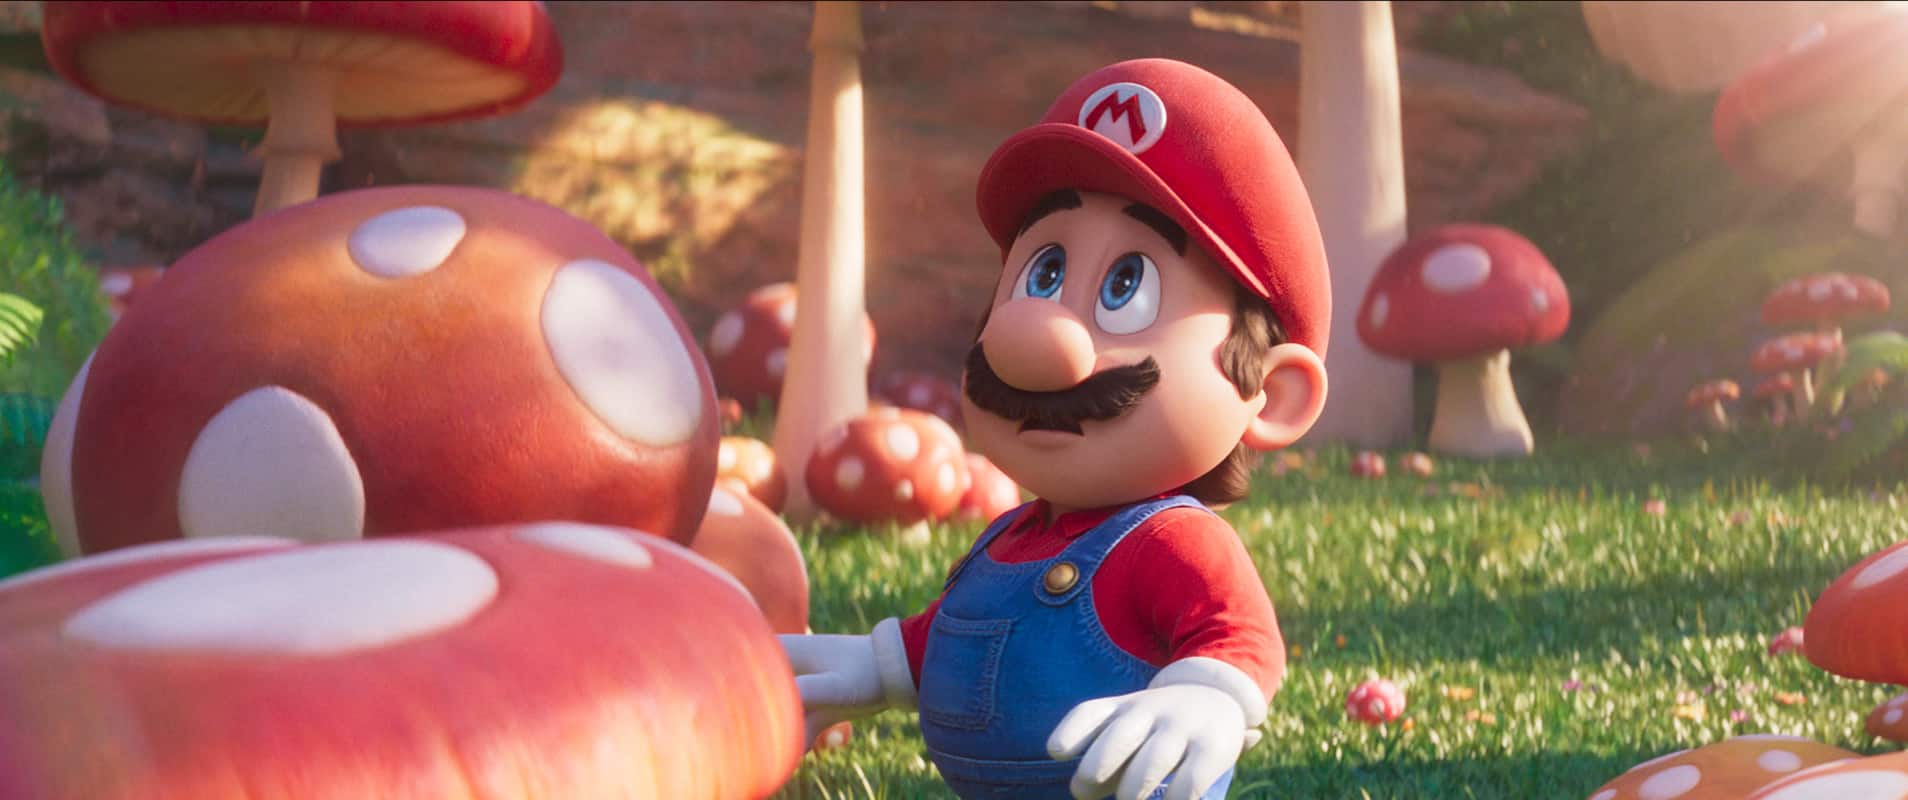 Super Mario Bros. - Il film: La recensione di un prodotto dedicato ai suoi fan